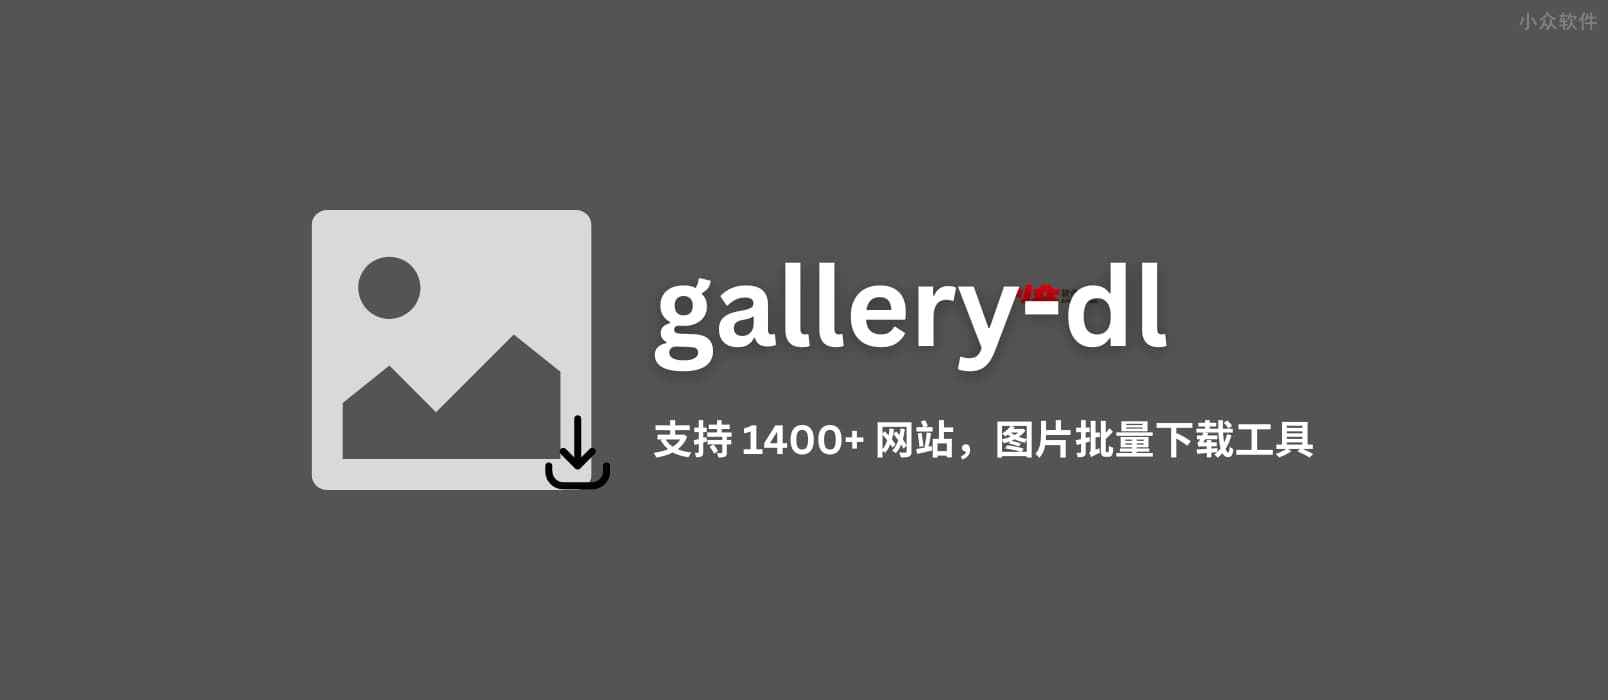 gallery-dl - 支持 1400+ 网站的开源图片批量下载工具